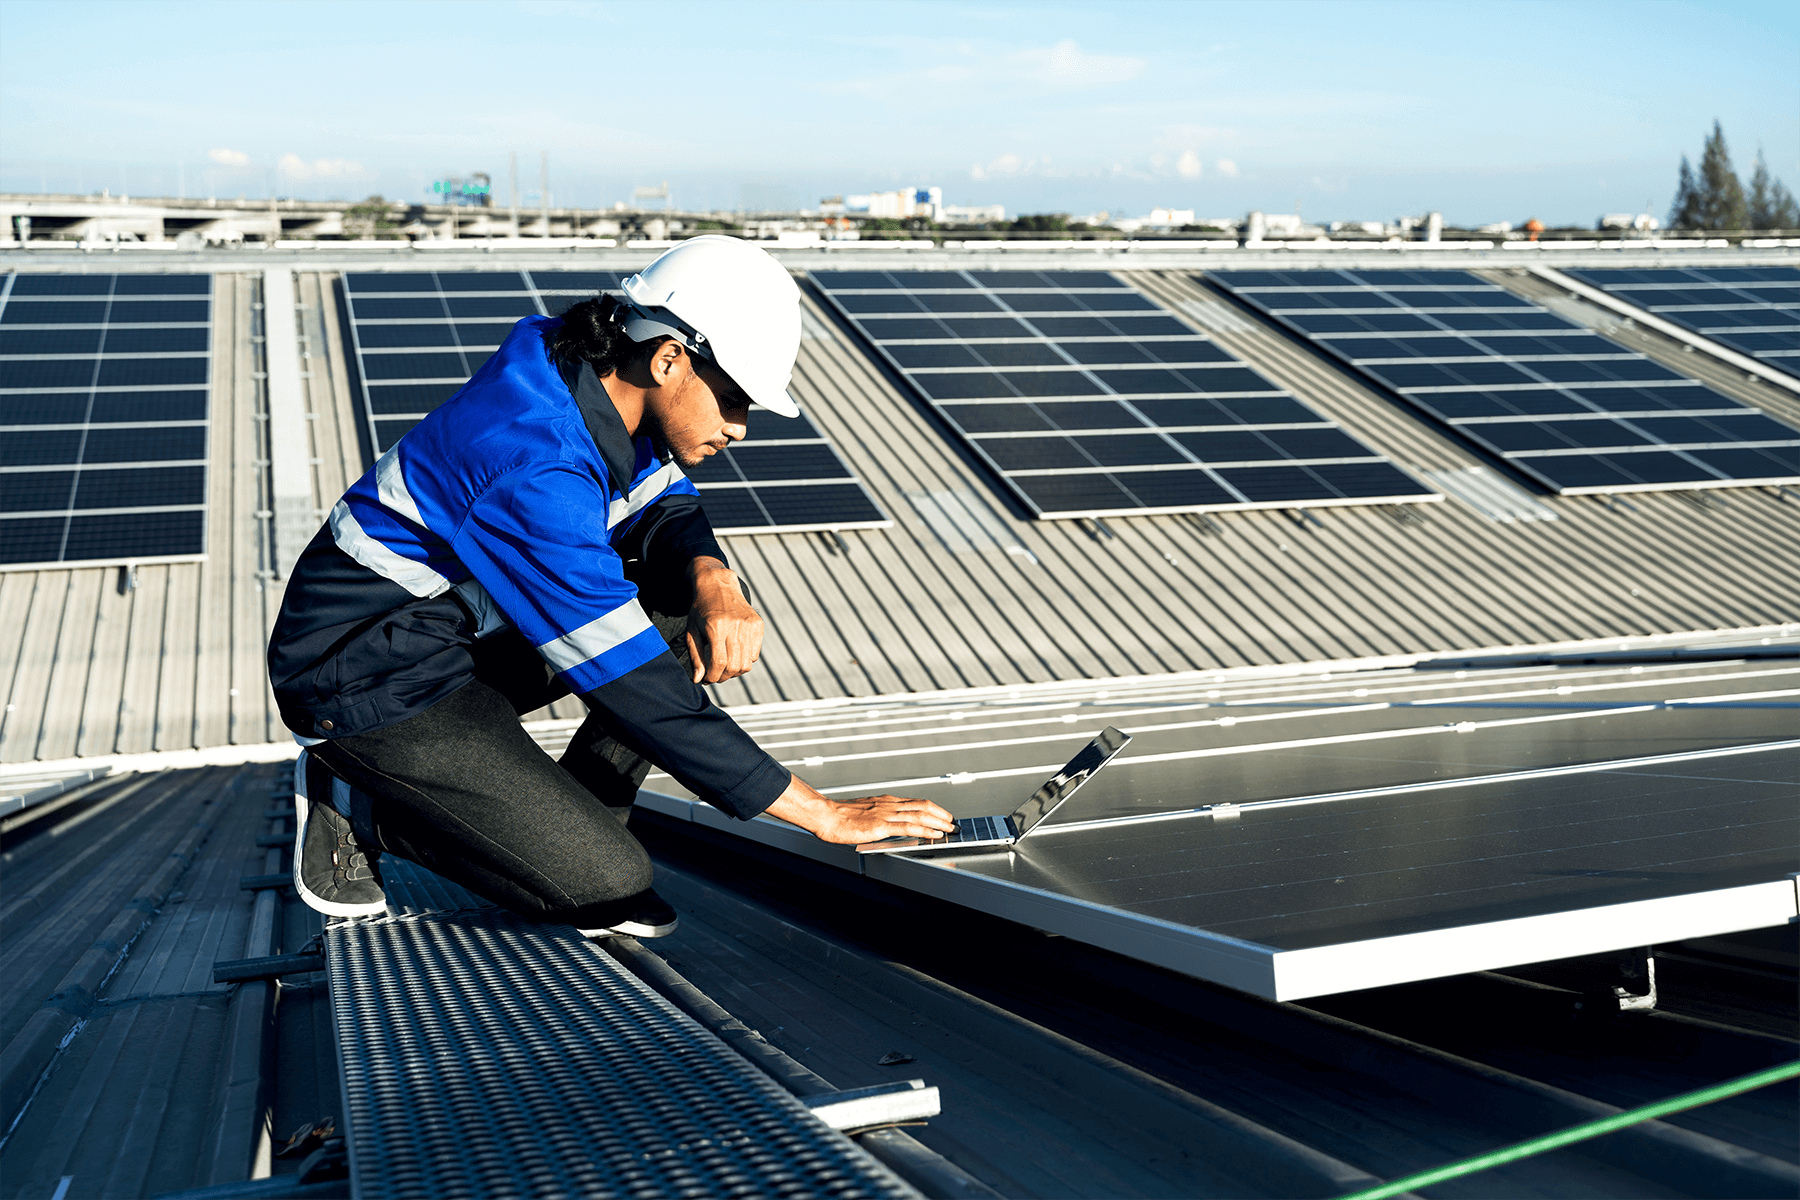 Ingegnere su tetto che monitora i pannelli fotovoltaici da portatile. incentivo fotovoltaico alle imprese